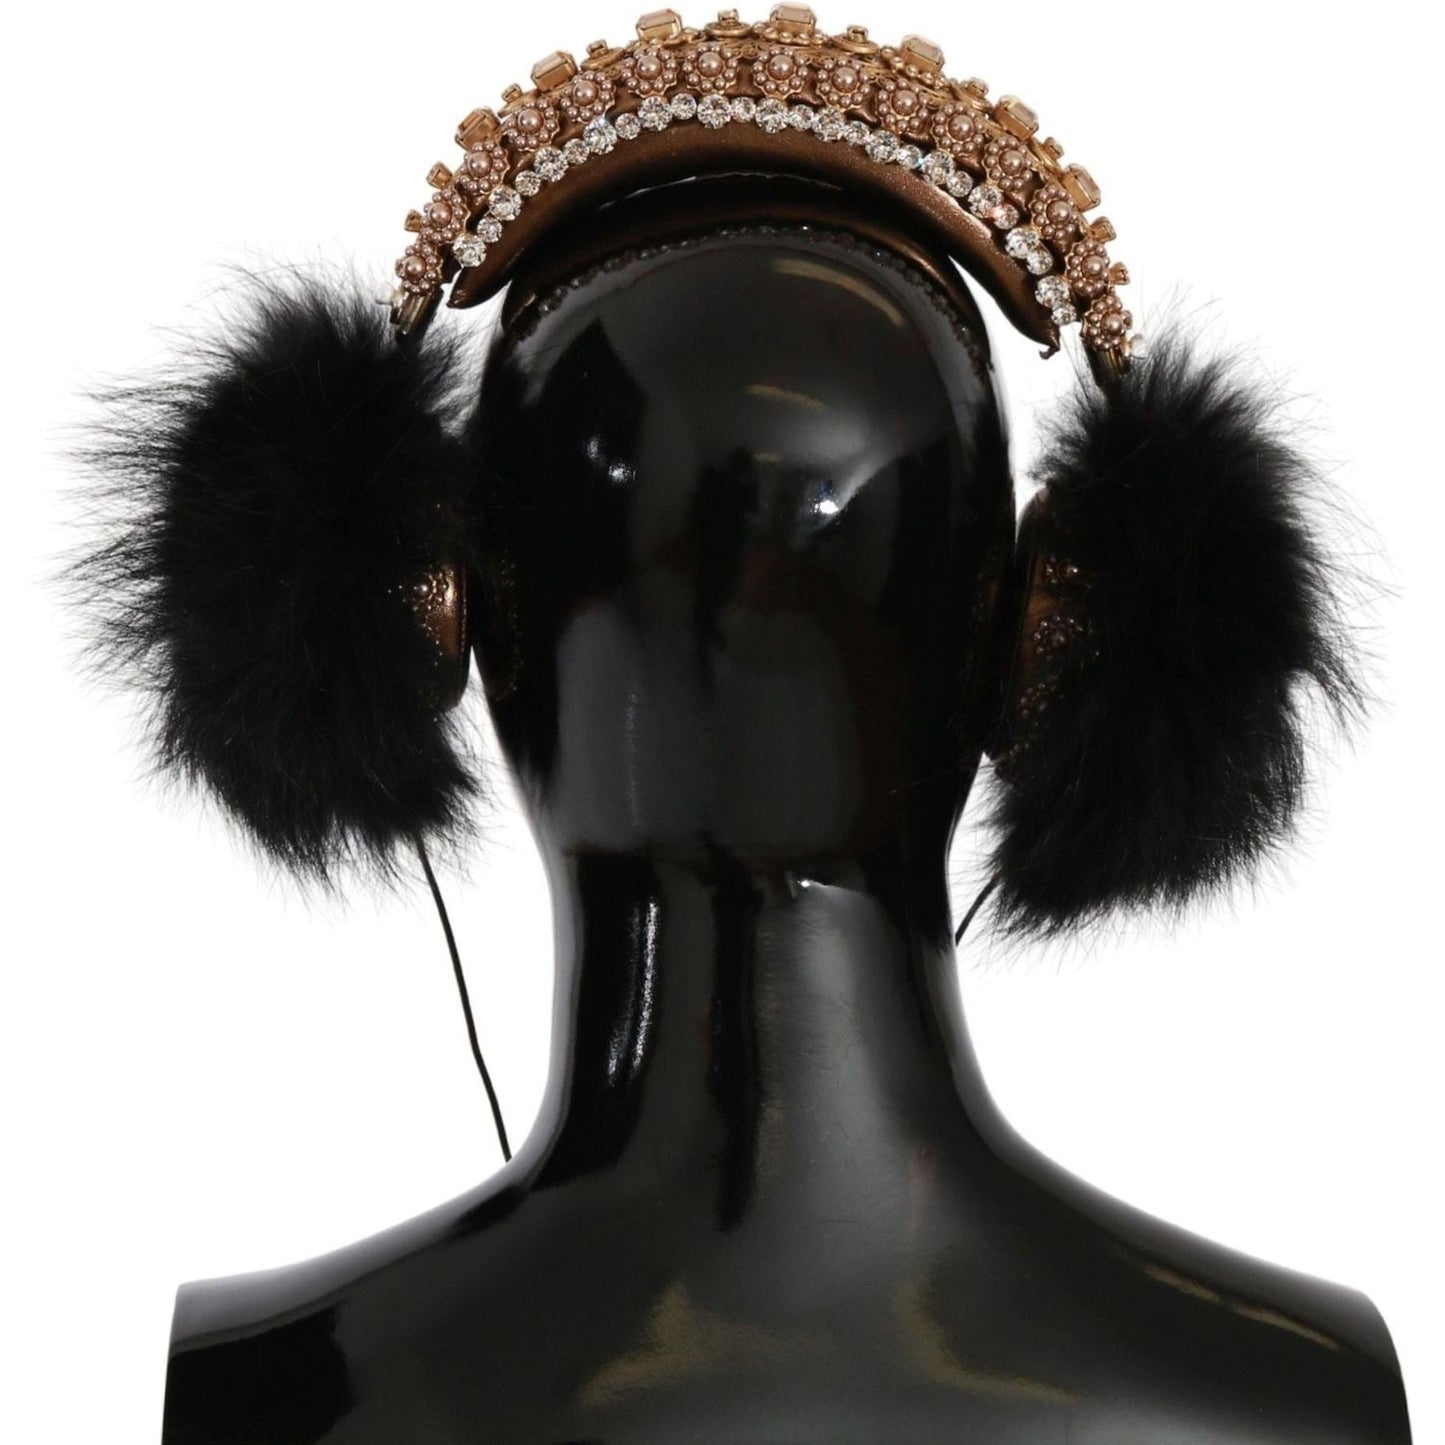 Dolce & Gabbana Gold Black Crystal Embellished Headphones gold-black-crystal-fur-headset-audio-headphones